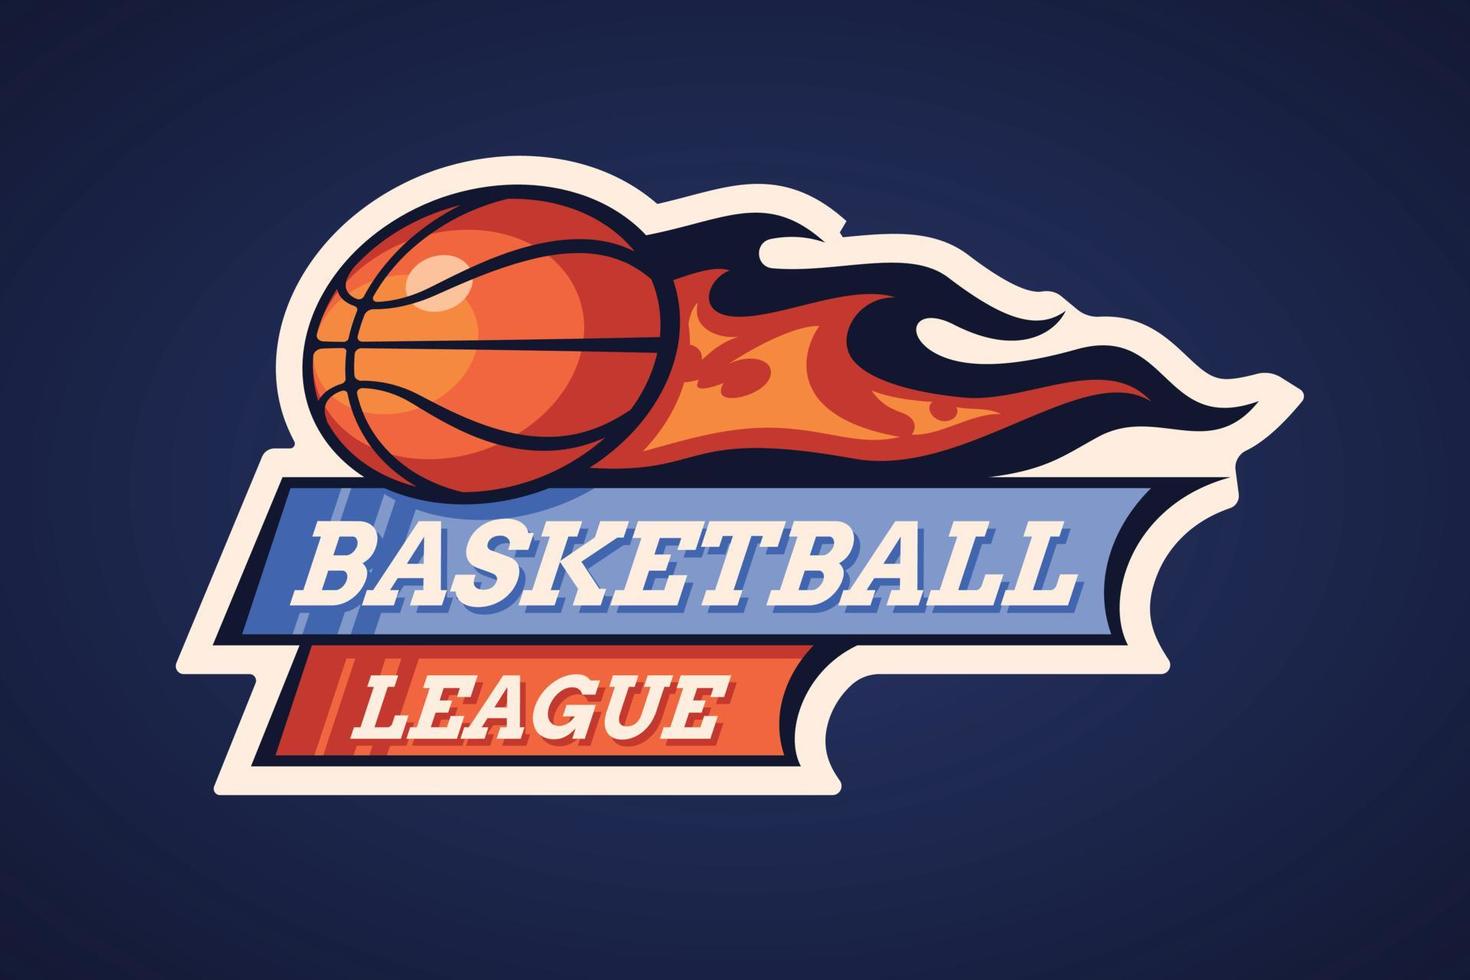 logotipo de basquete de design plano desenhado à mão vetor